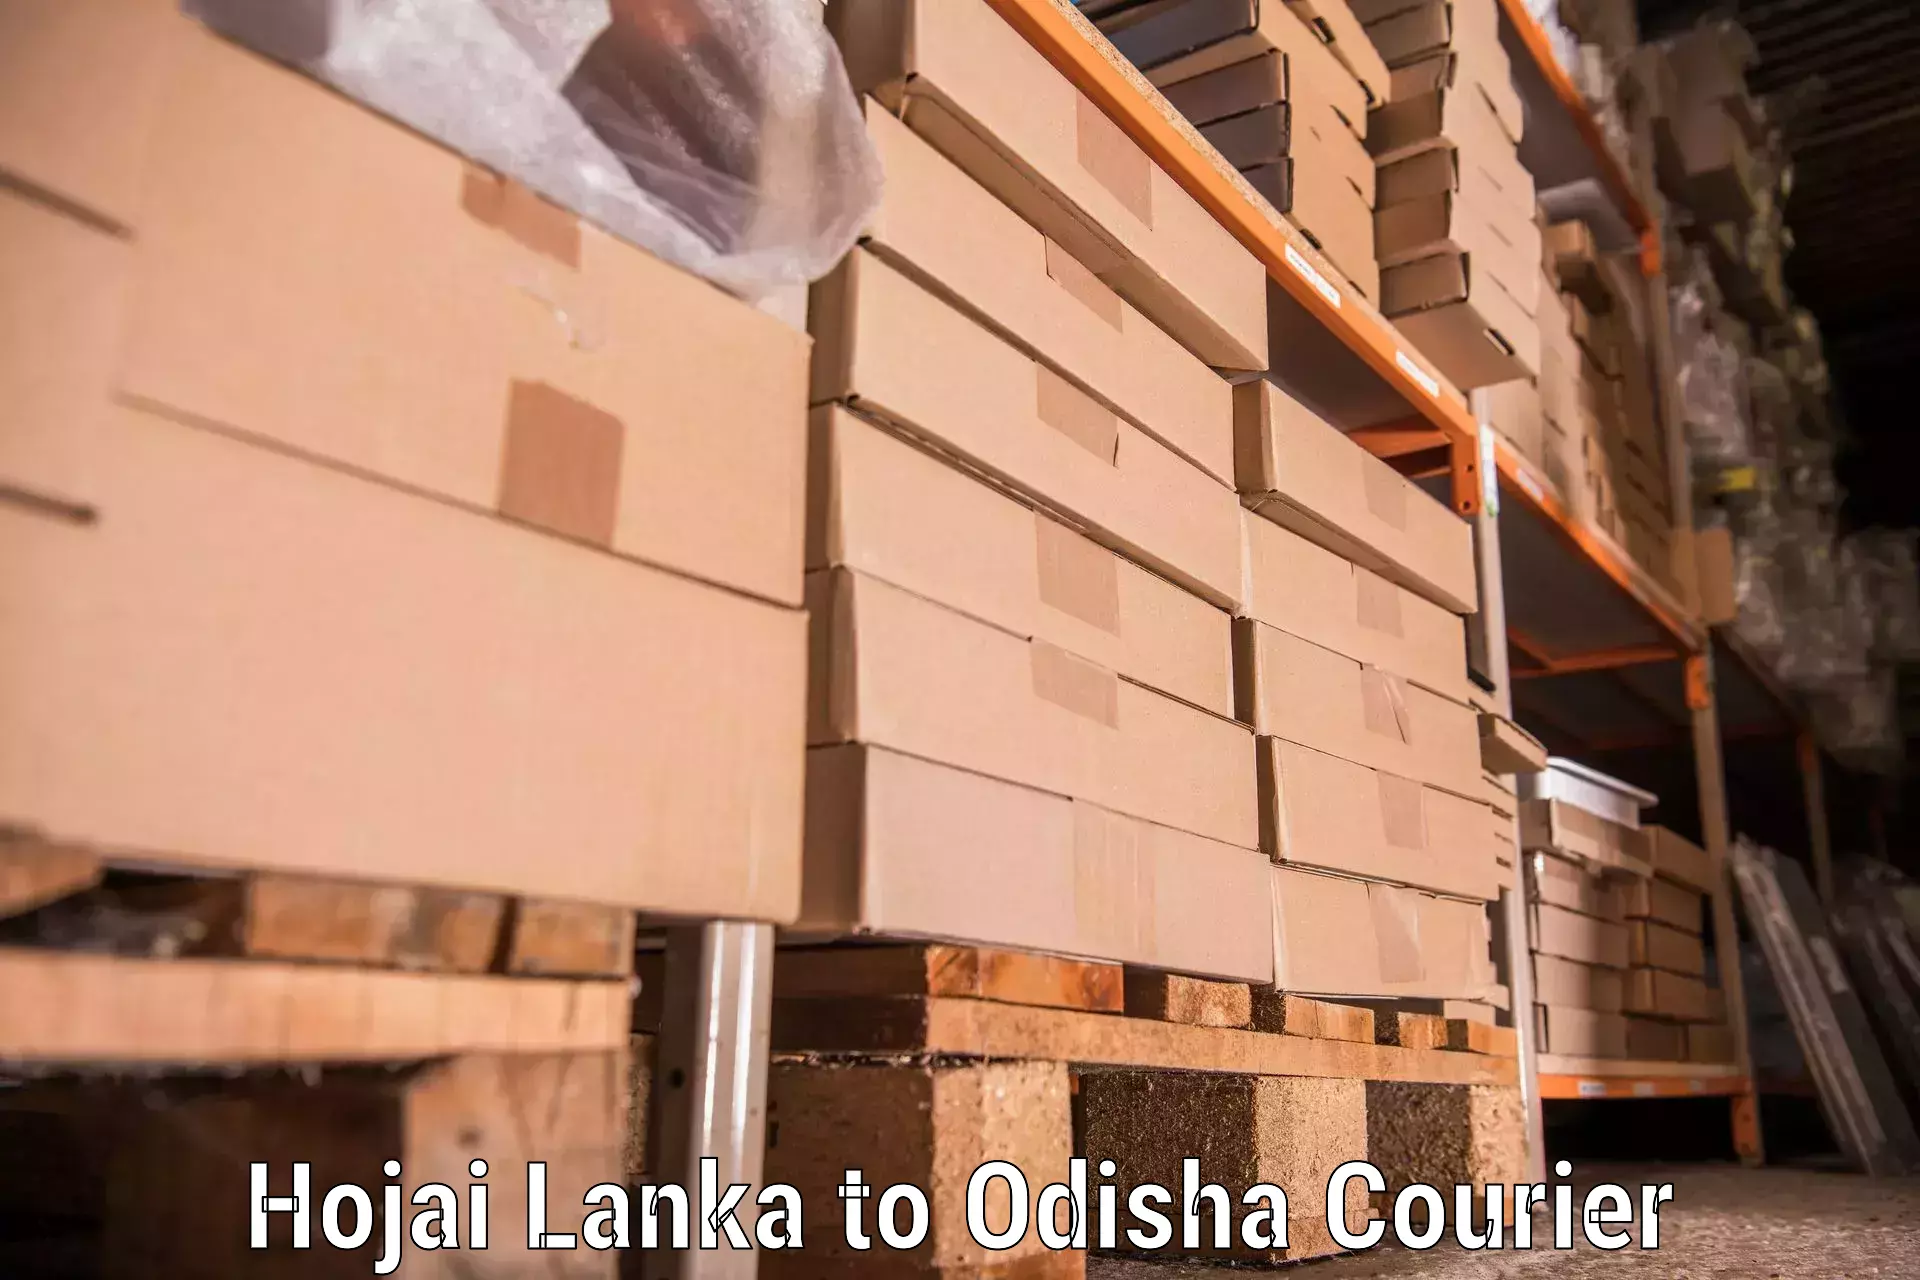 Seamless moving process Hojai Lanka to Kodala